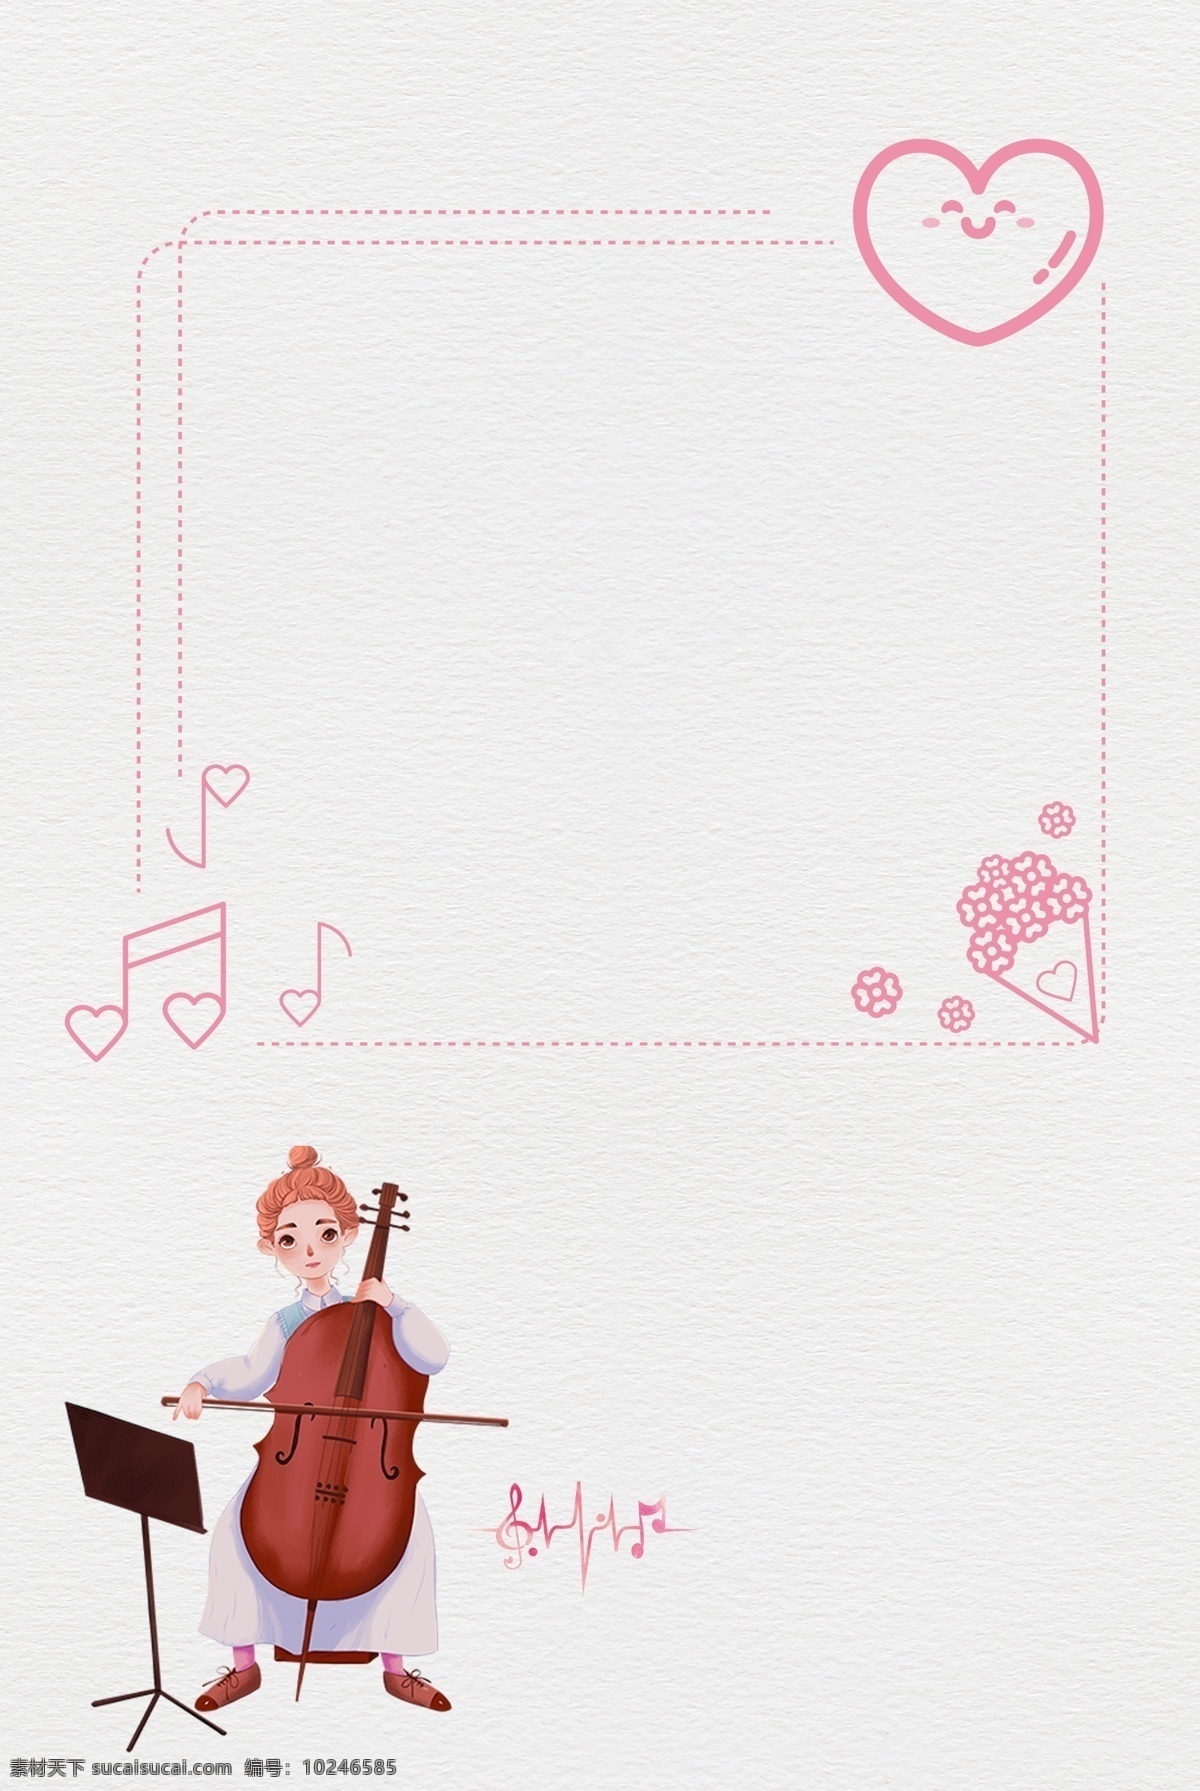 音乐节 音乐 活动 广告 背景 音乐活动 简约 学生活动 大提琴 音符